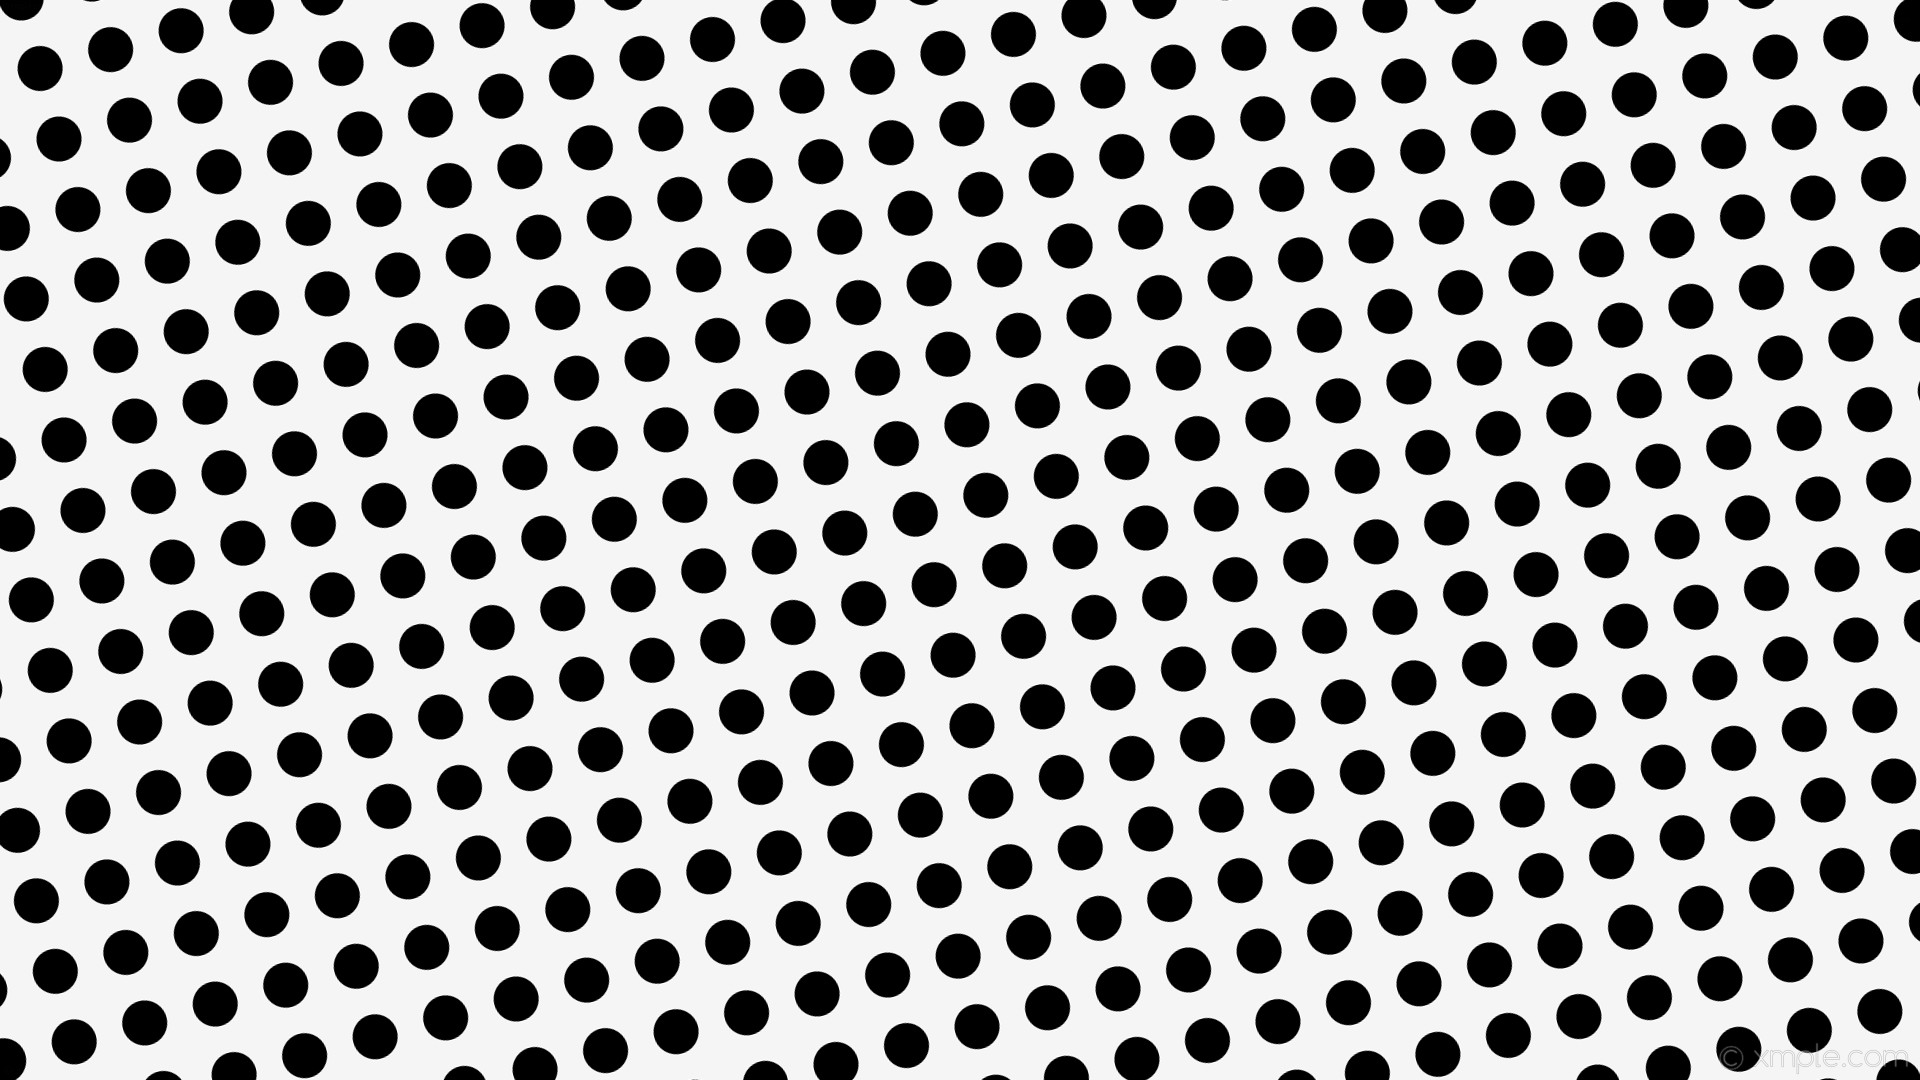 1920x1080 wallpaper white dots black spots polka white smoke #f5f5f5 #000000 15Â° 45px  73px